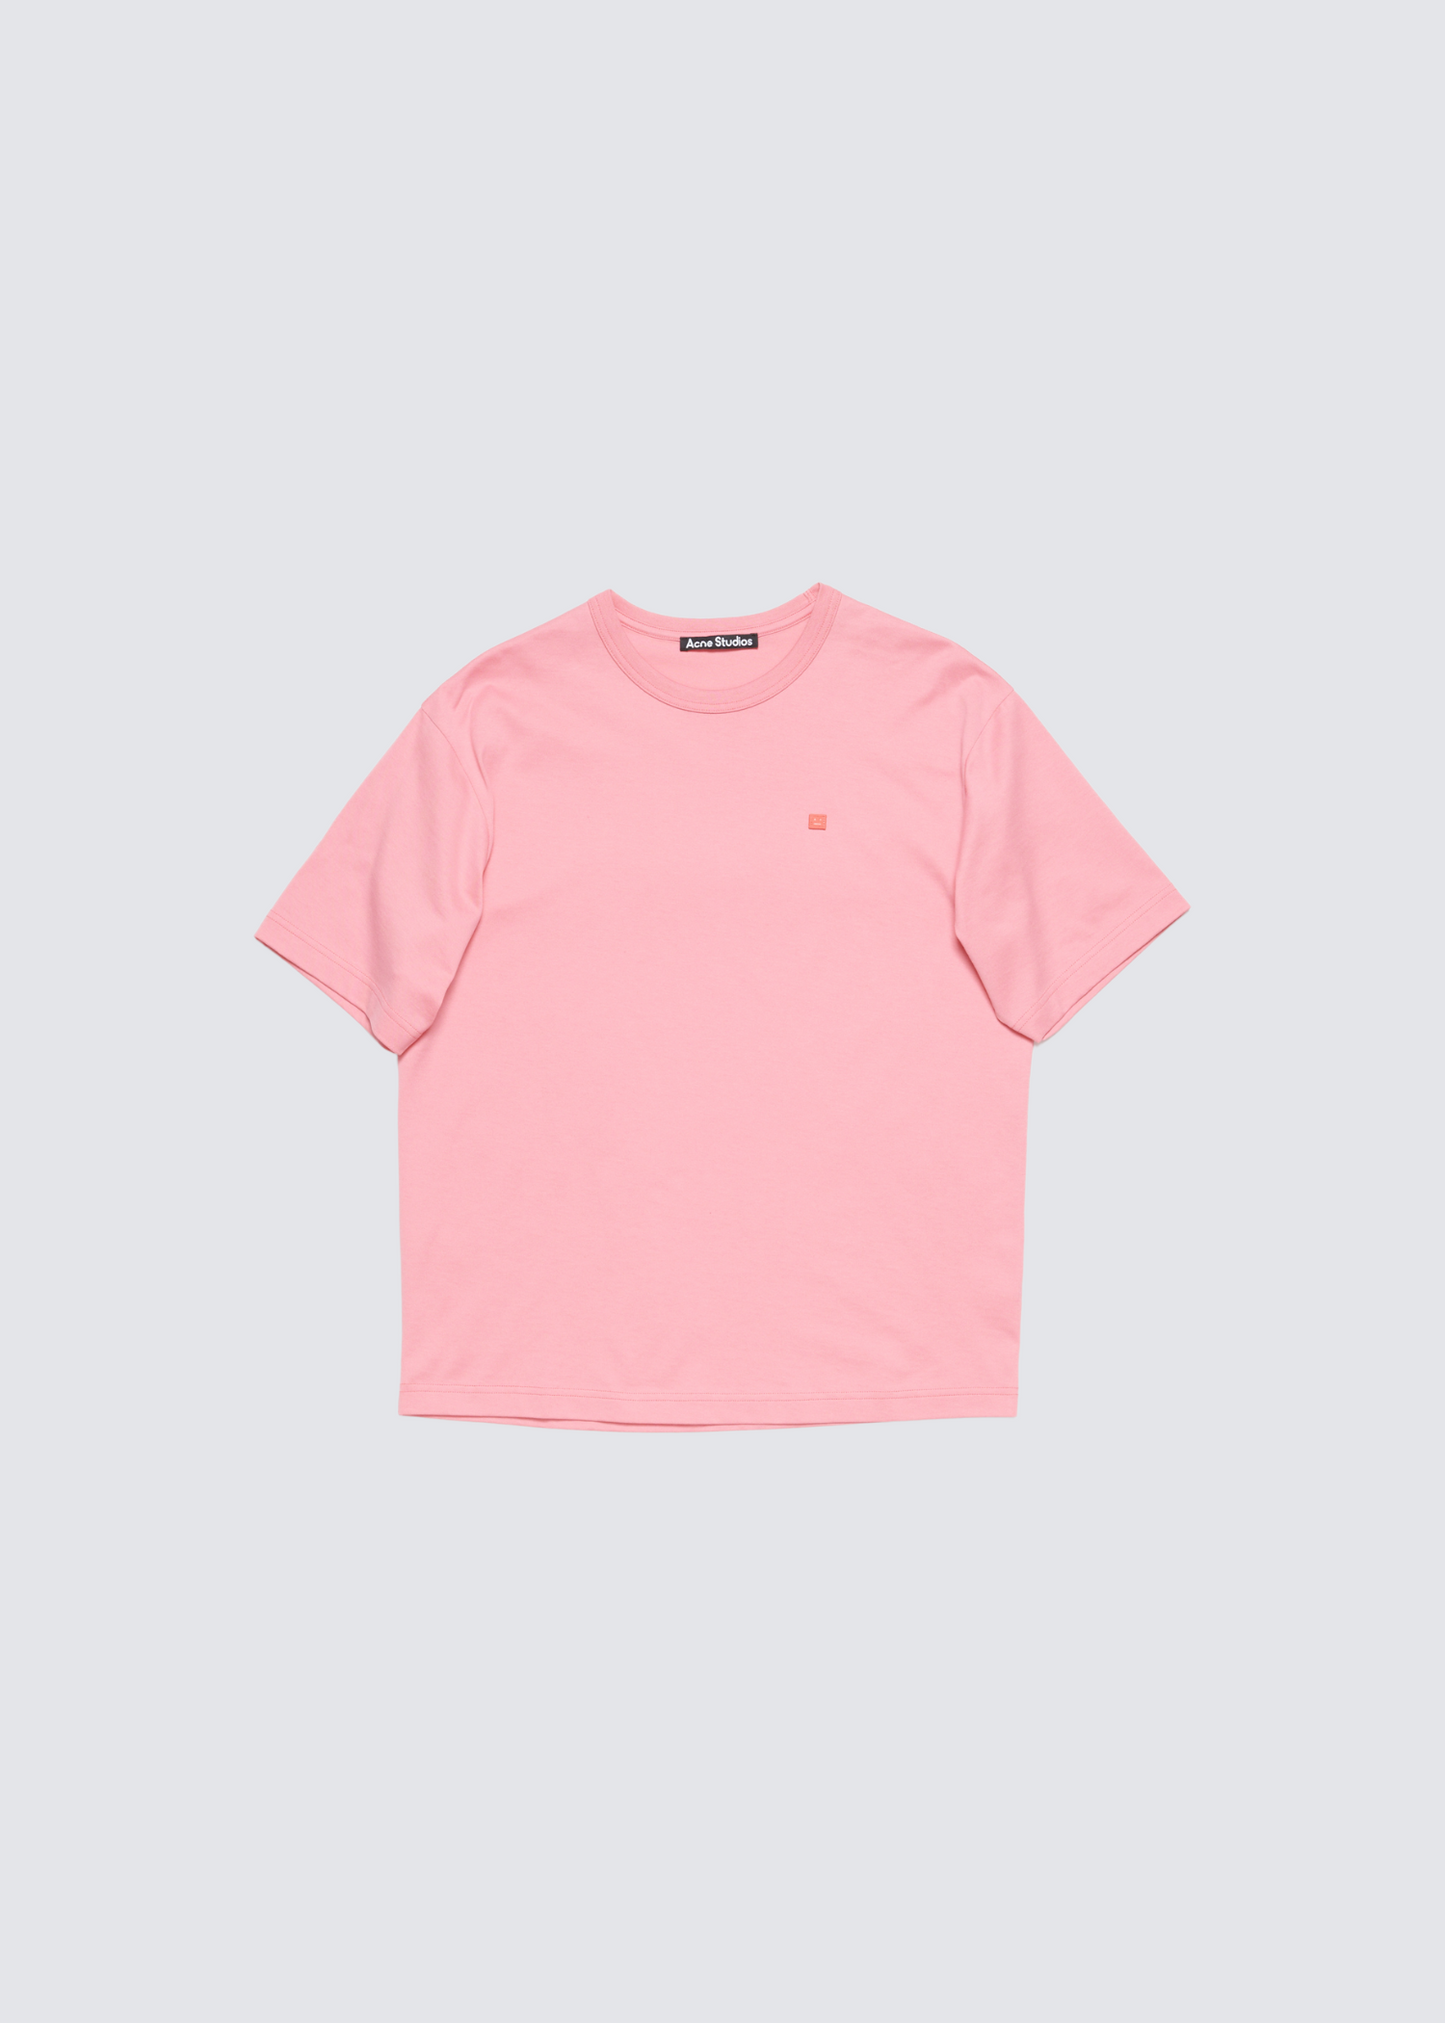 Face, Tango Pink, T-Shirt